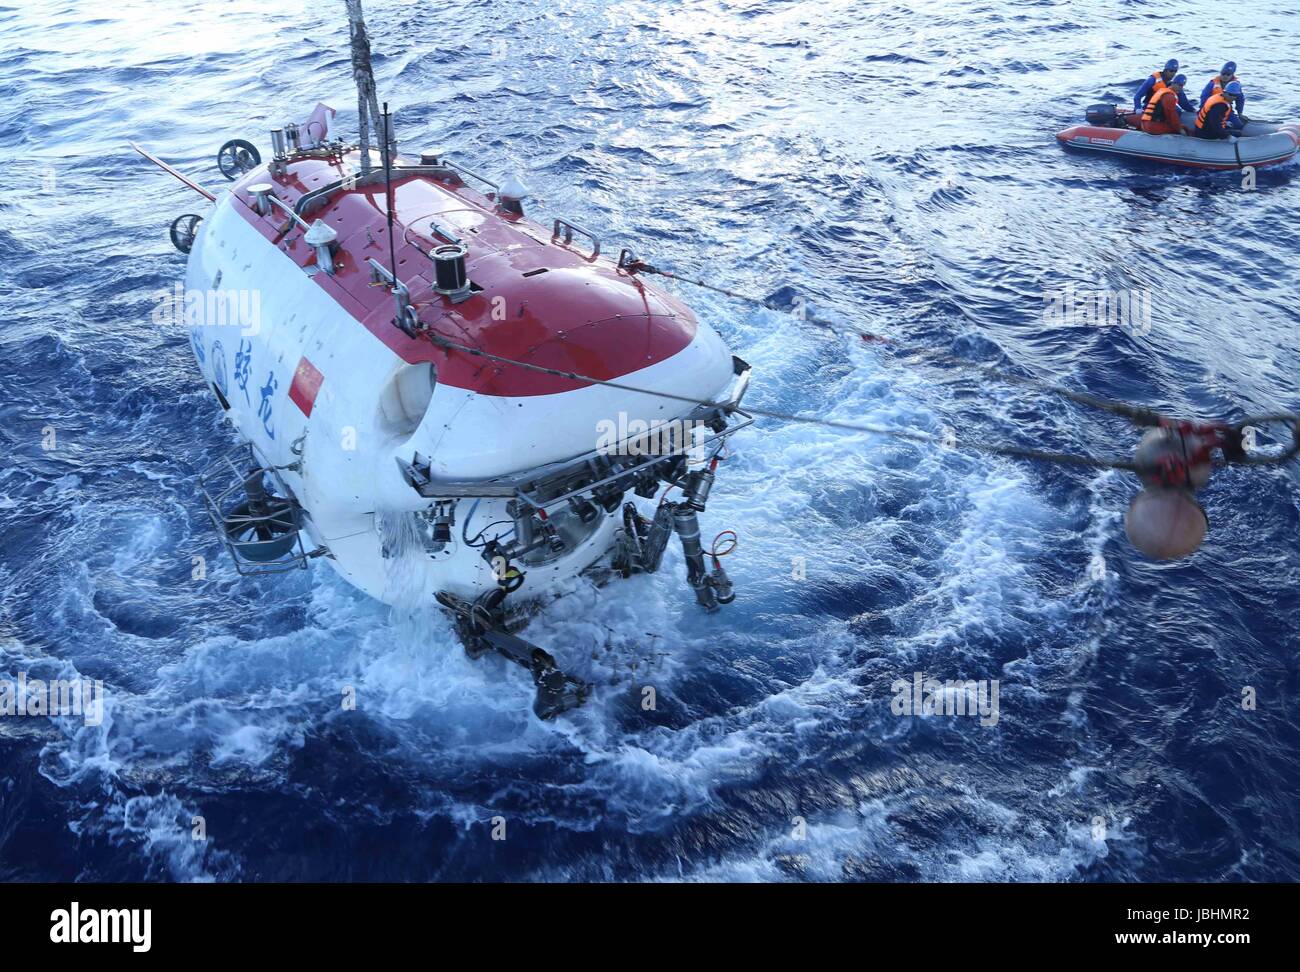 (170611) -- A BORDO DI UNA NAVE XIANGYANGHONG 09, 11 giugno 2017 (Xinhua) -- presidiati sommergibile Jiaolong superfici dopo la sua immersione nella trincea di Yap, 11 giugno 2017. Jiaolong completato il suo 151dive domenica dal 2009. (Xinhua/Liu di spedizione) (zwx) Foto Stock